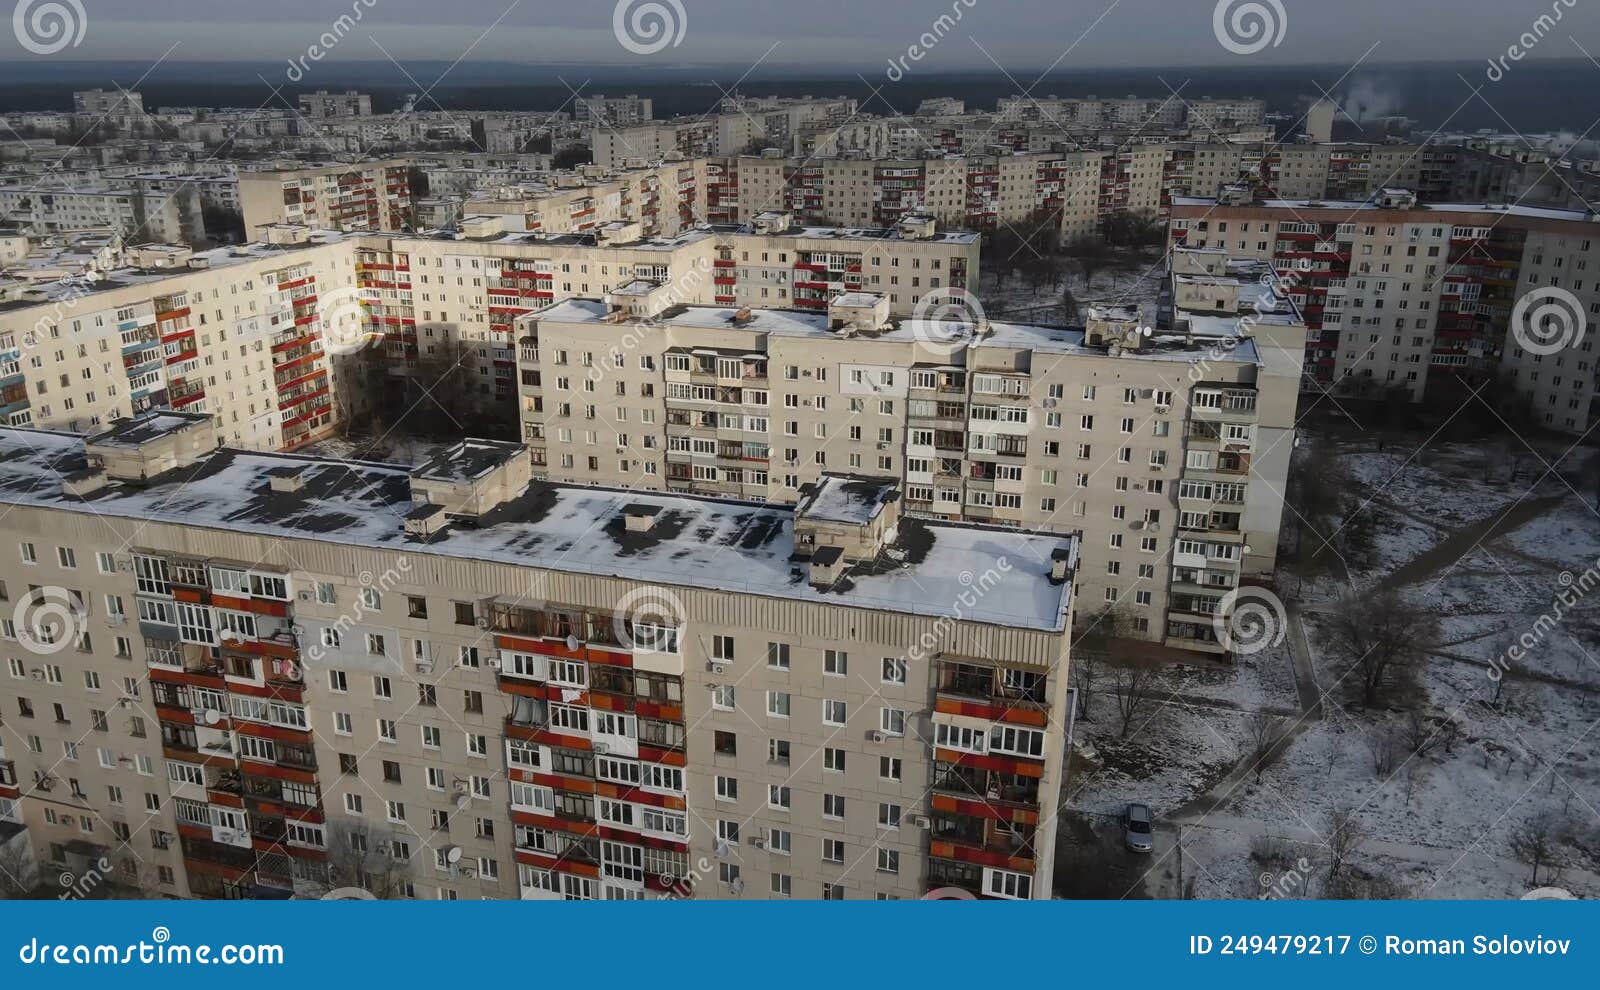 civil houses in sievierodonetsk, lugansk region. ukraine.